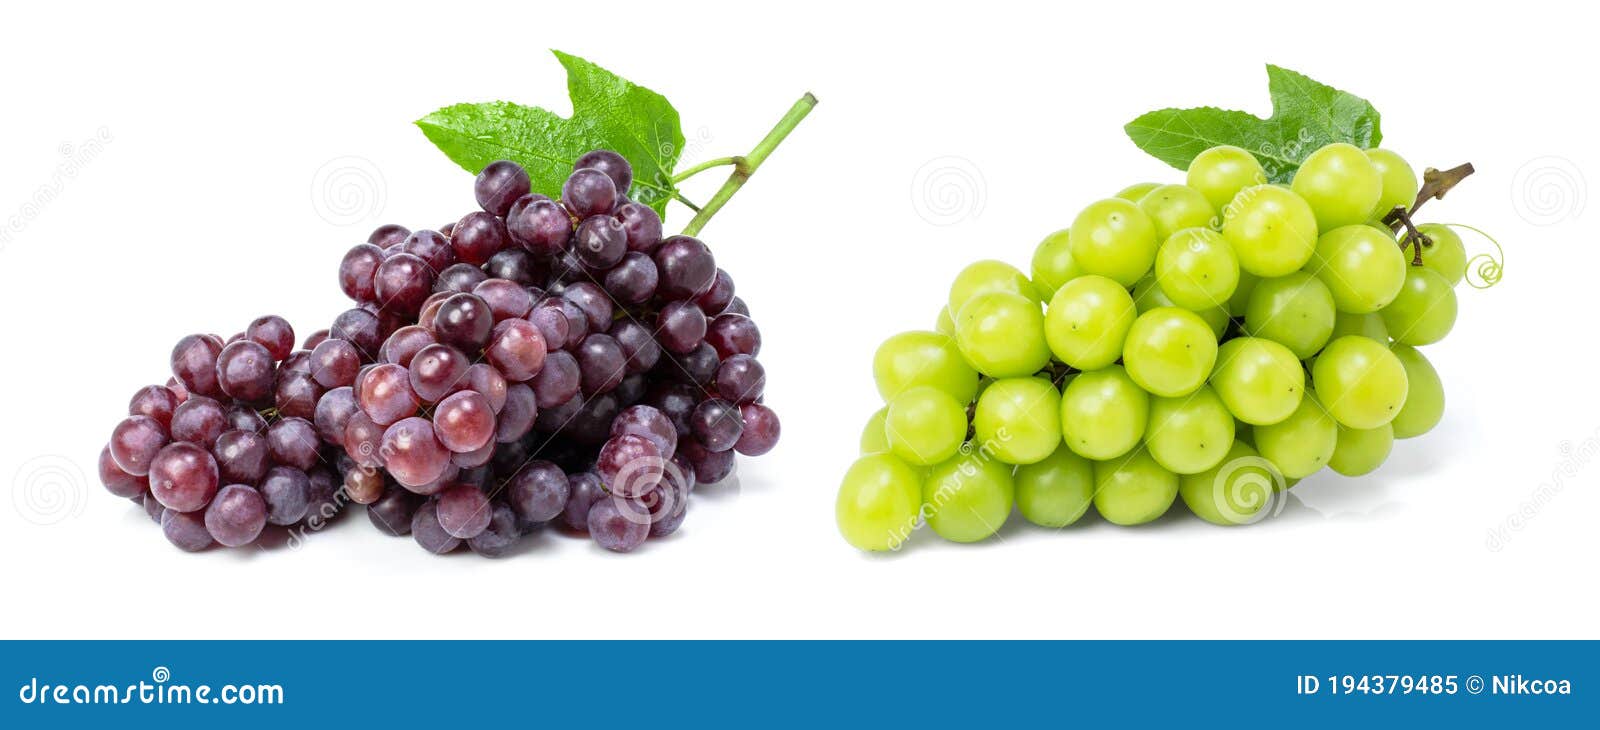 Grape isolated on white stock image. Image of fruit - 194379485